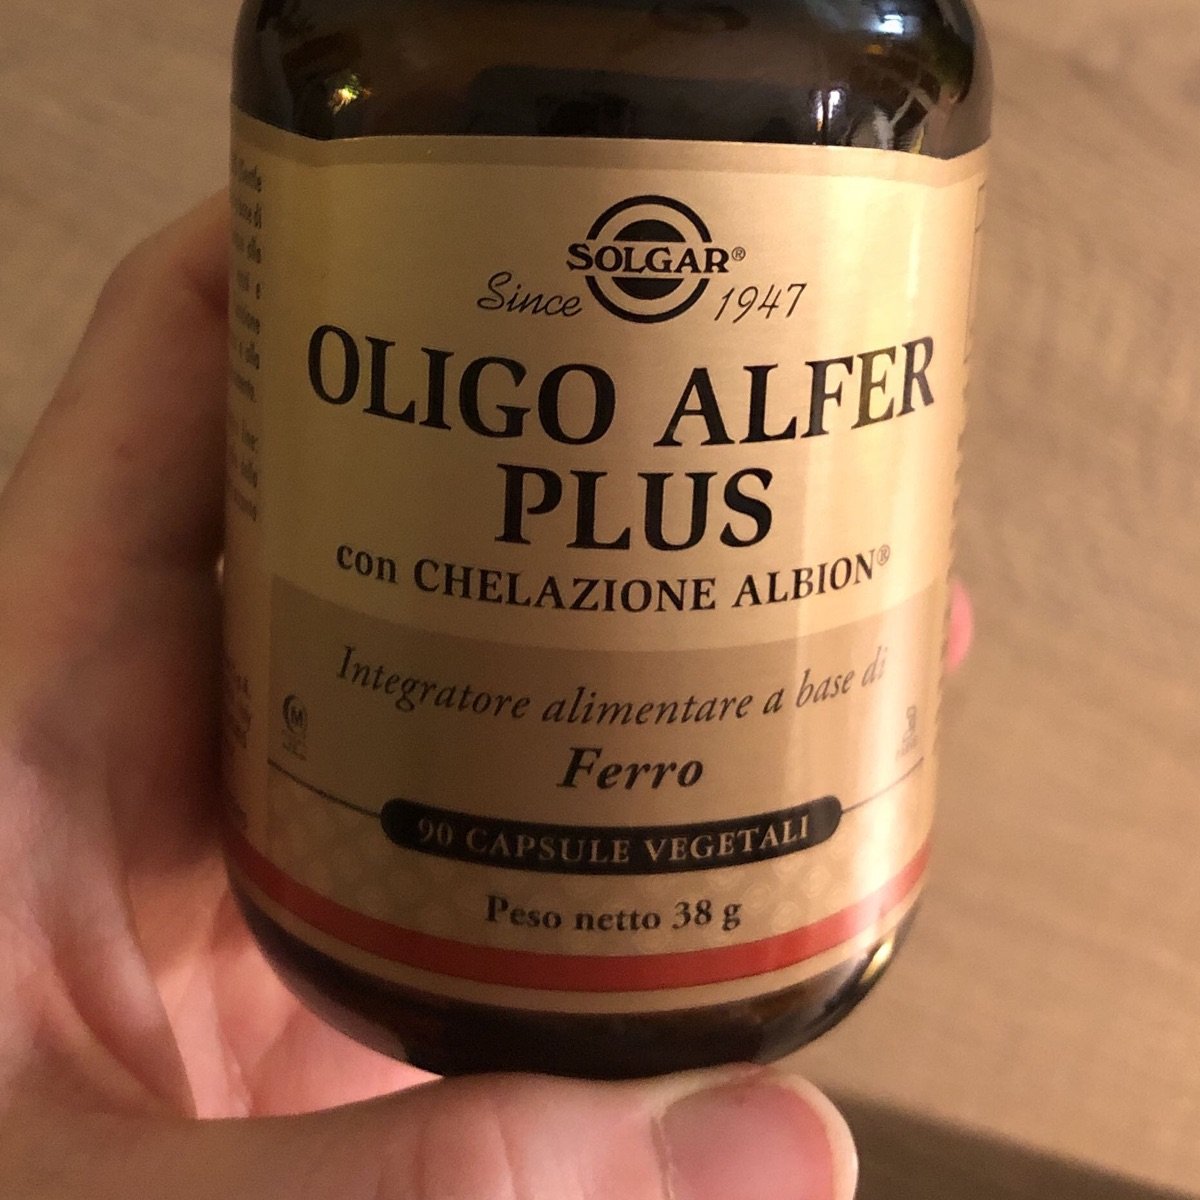 Solgar Oligo Alfer Plus Reviews | abillion